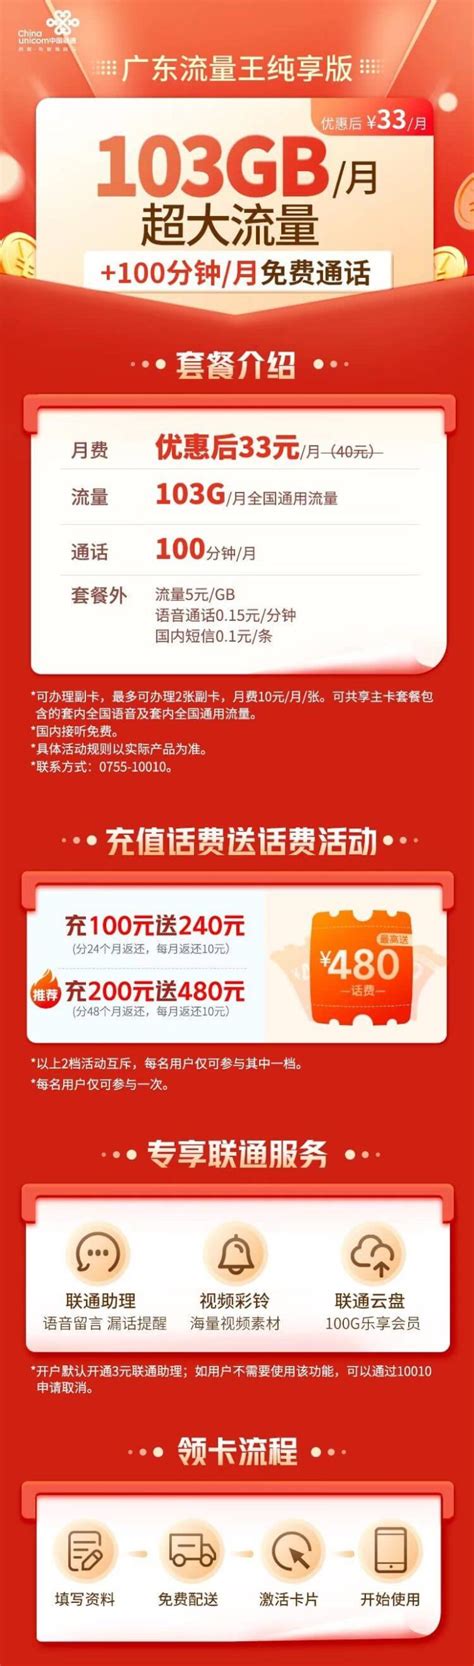 广东联通流量王纯享版33元套餐申请入口 - 优卡荟